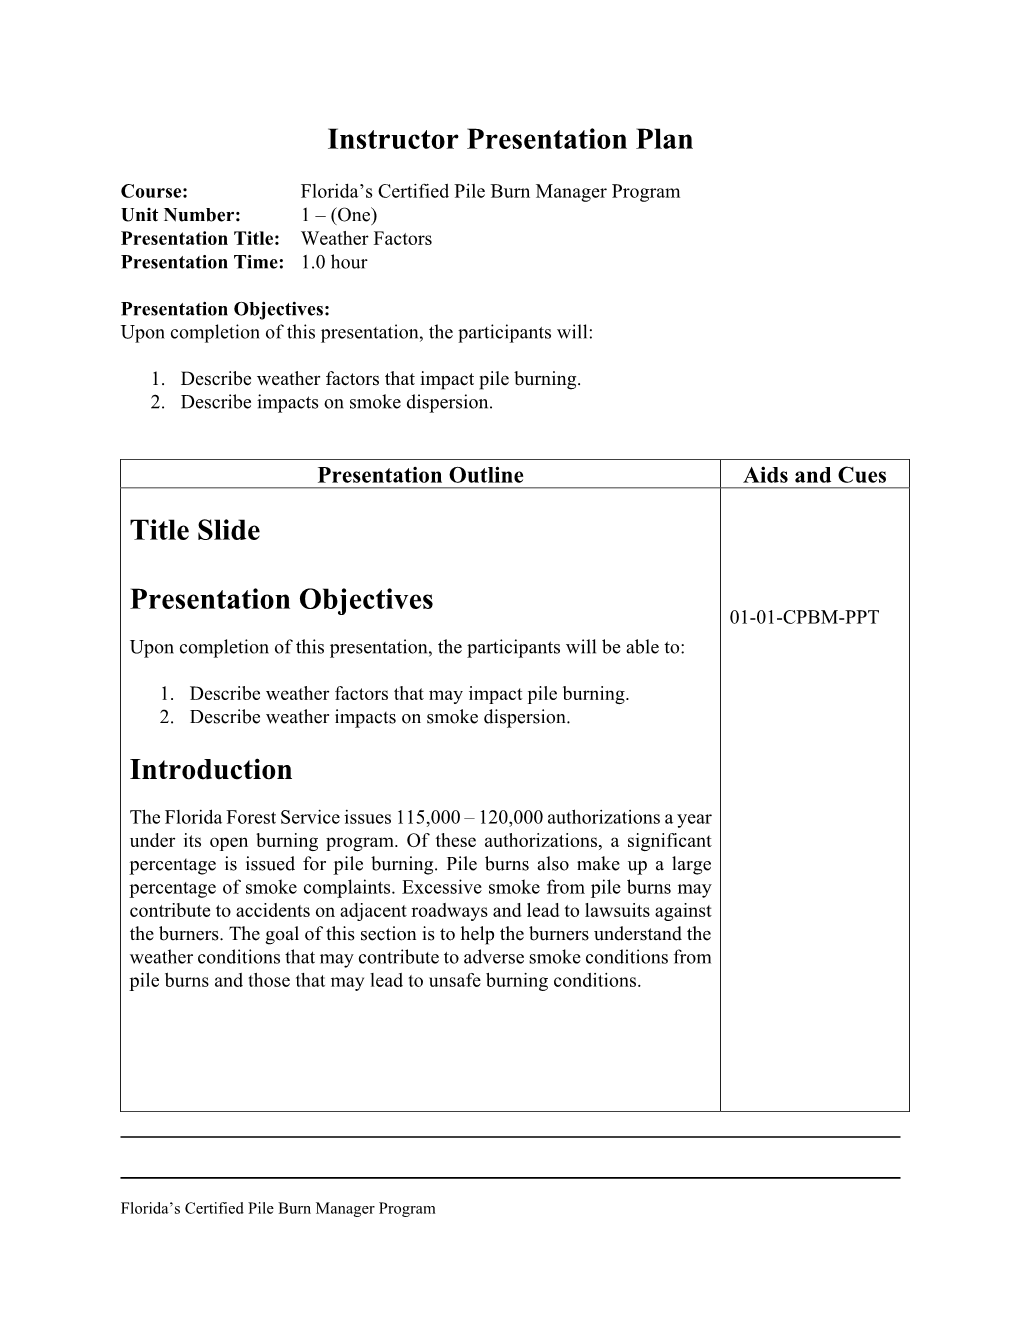 Instructor Presentation Plan Title Slide Presentation Objectives Introduction